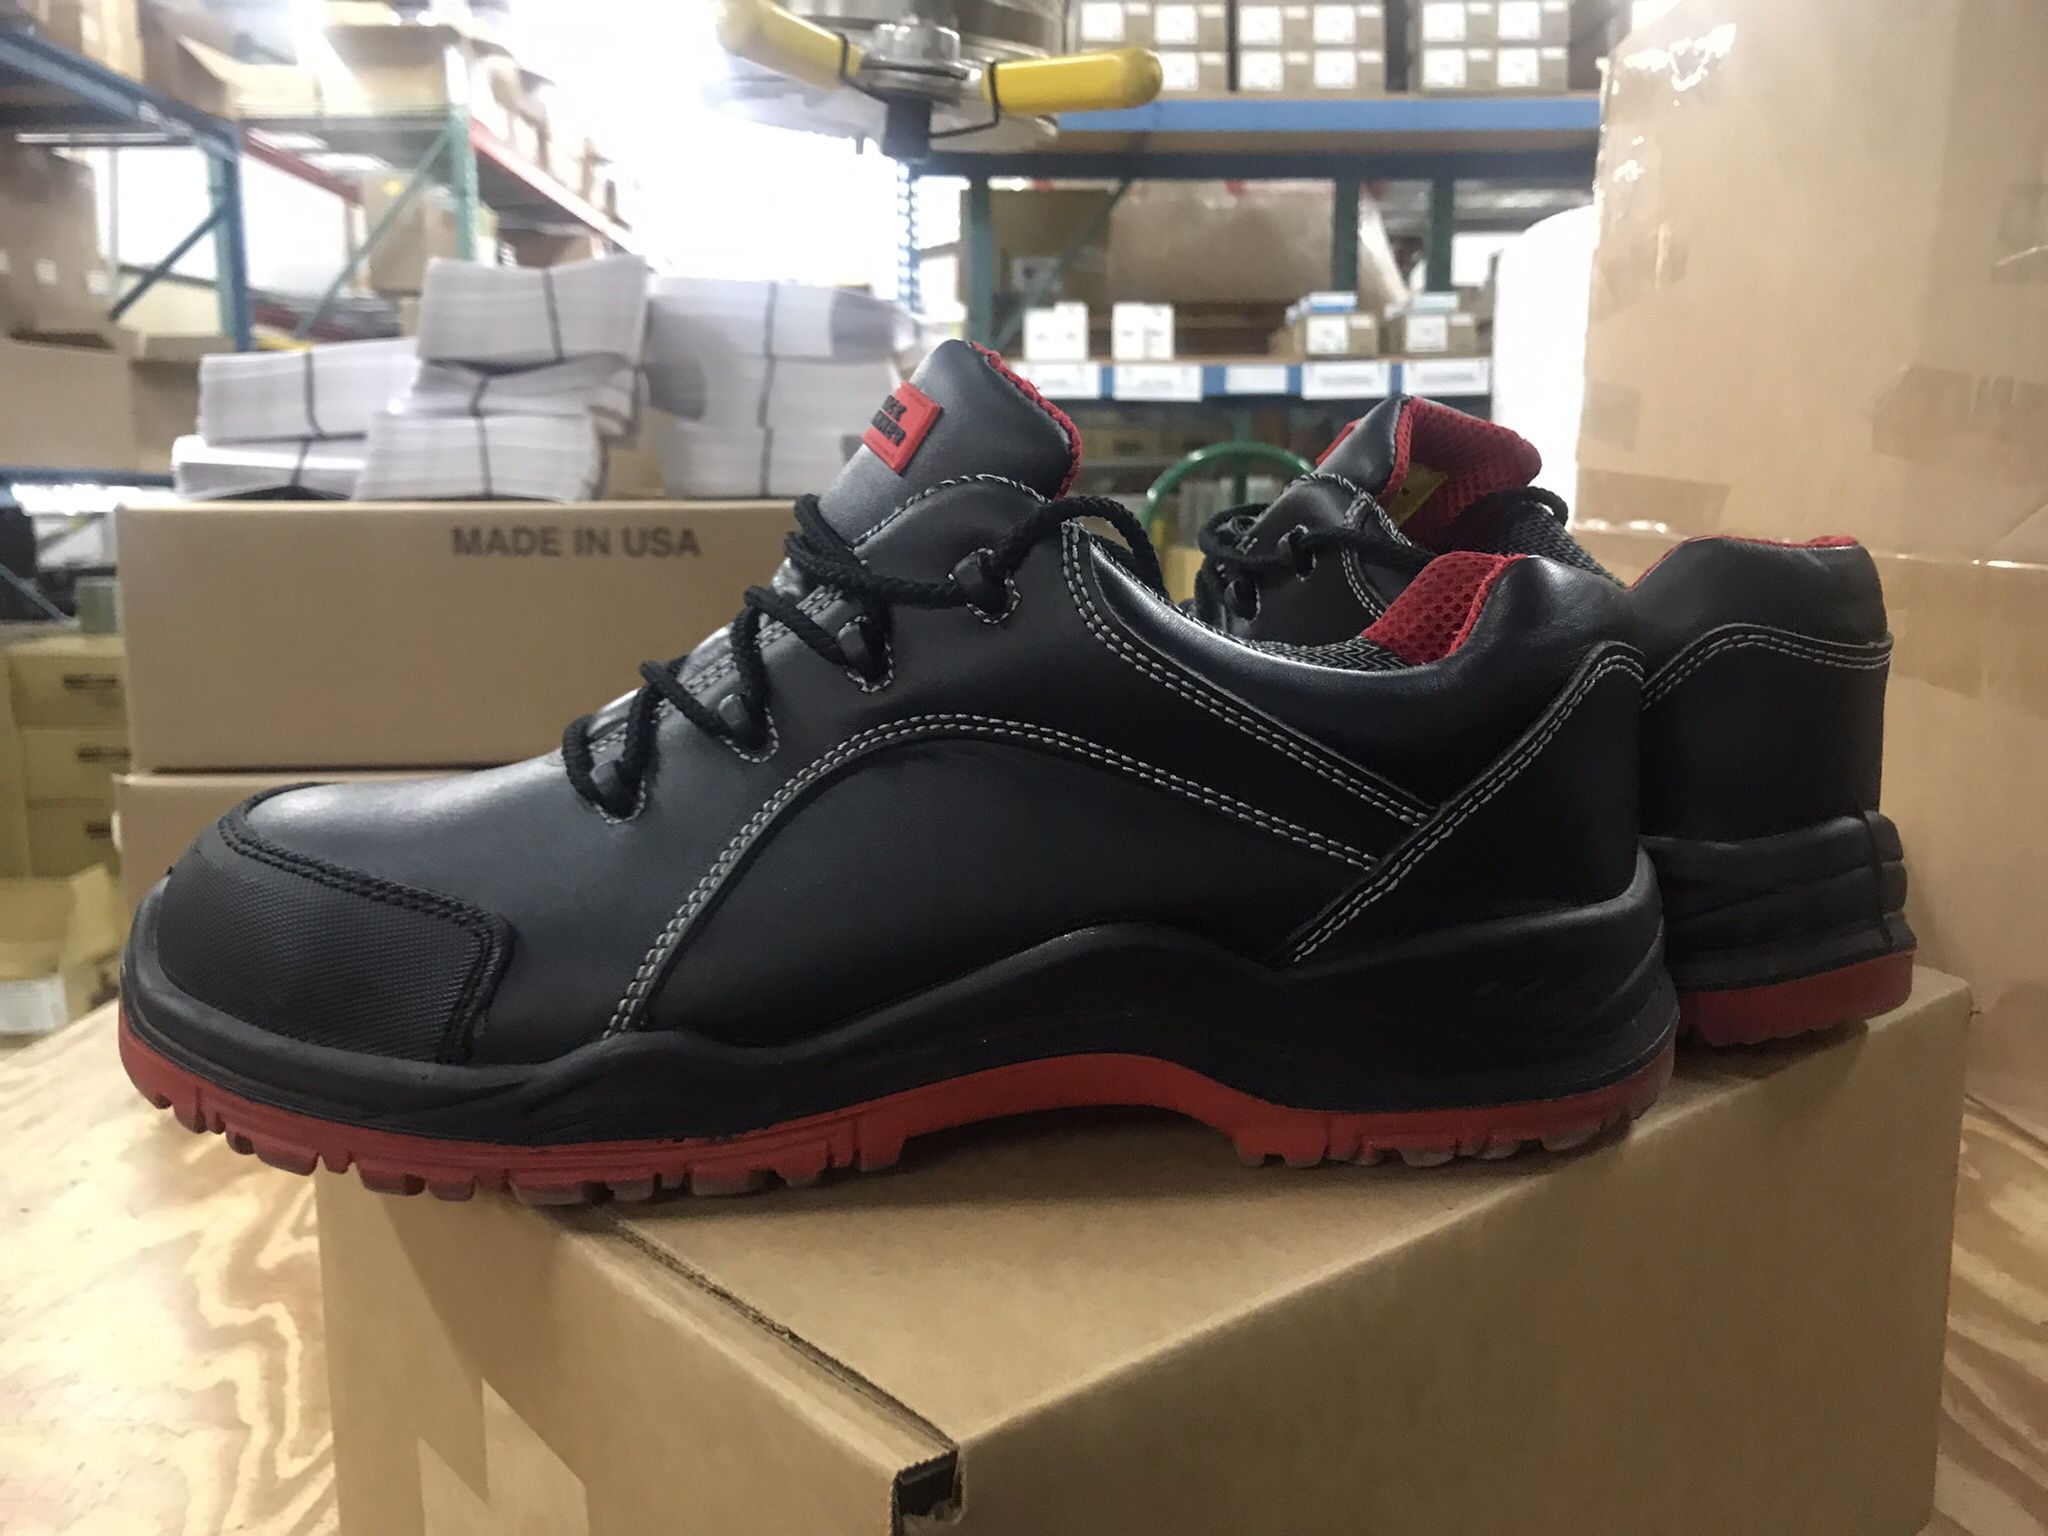 Men’s Size 14 Steel Toe Work Shoes